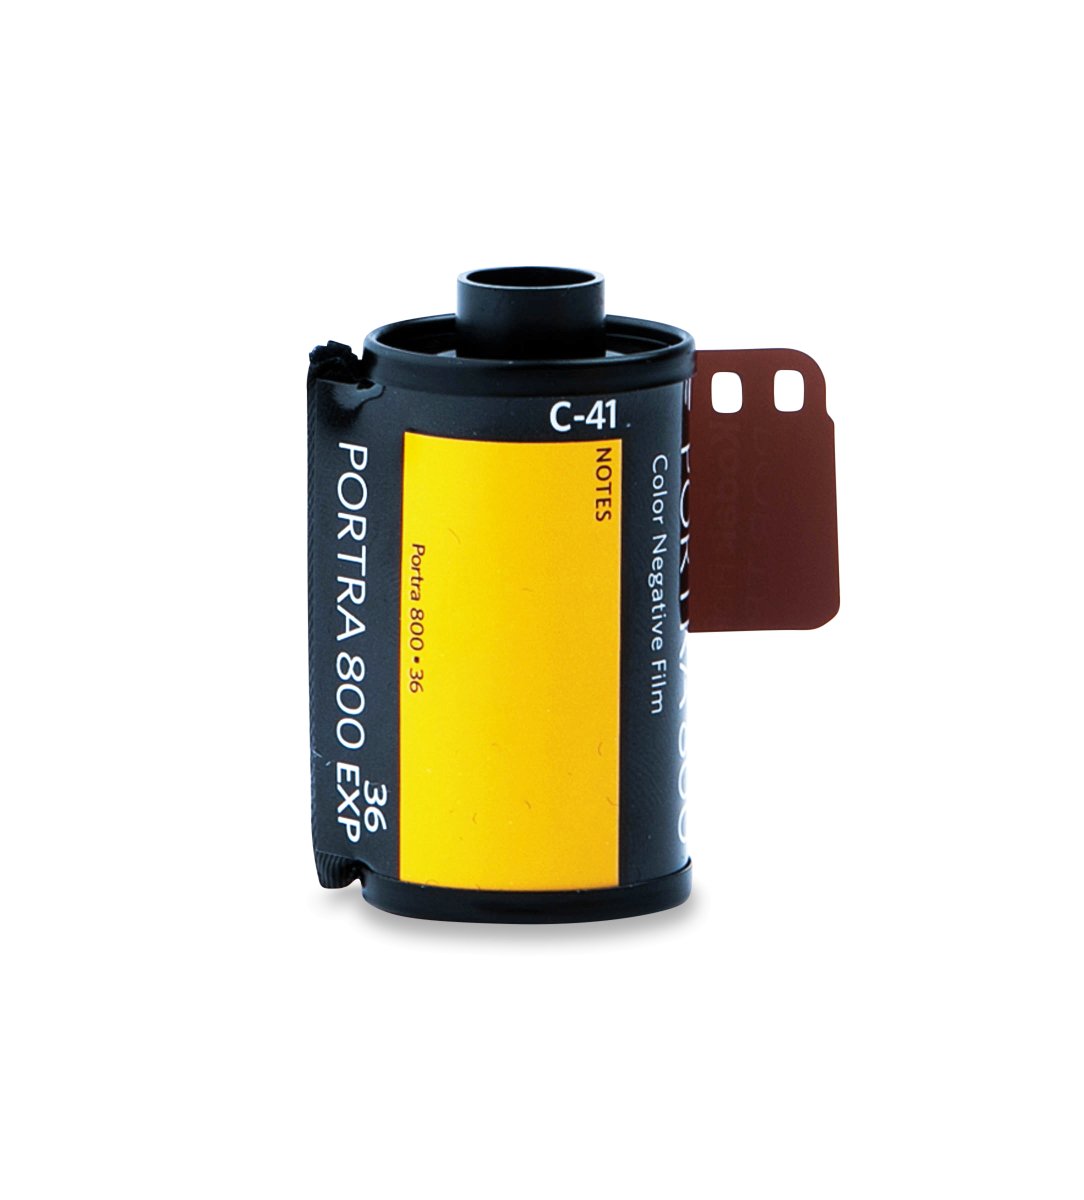 Kodak Portra 800 - 35mm - 36 Exposure - Single Roll - Rewind Photo Lab - Kodak